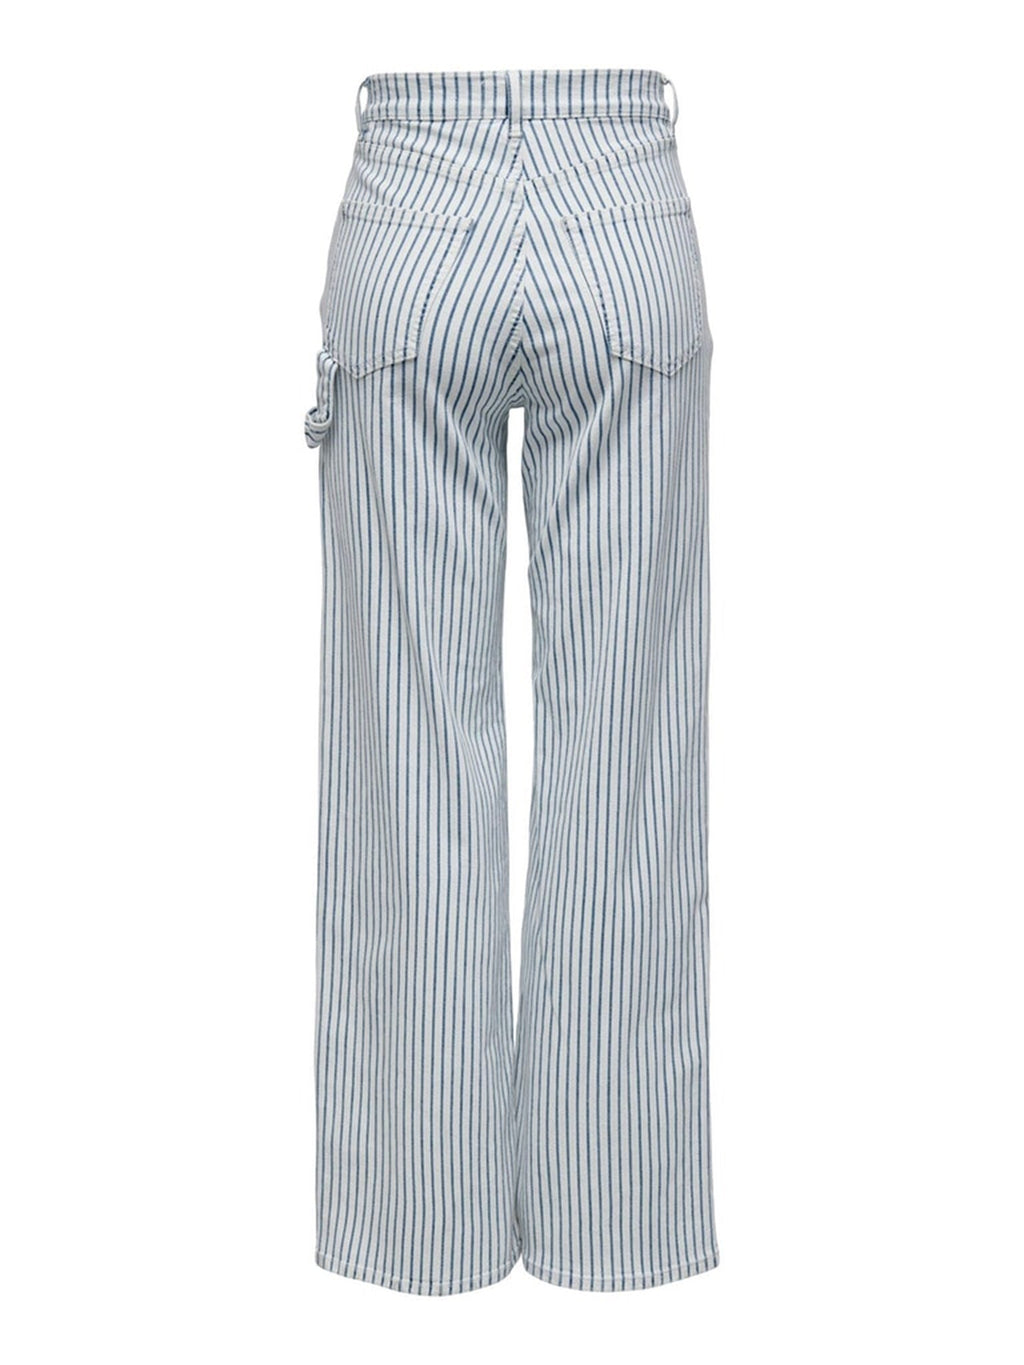 Esperanza a rayas de cintura alta Pants - Blanco azul